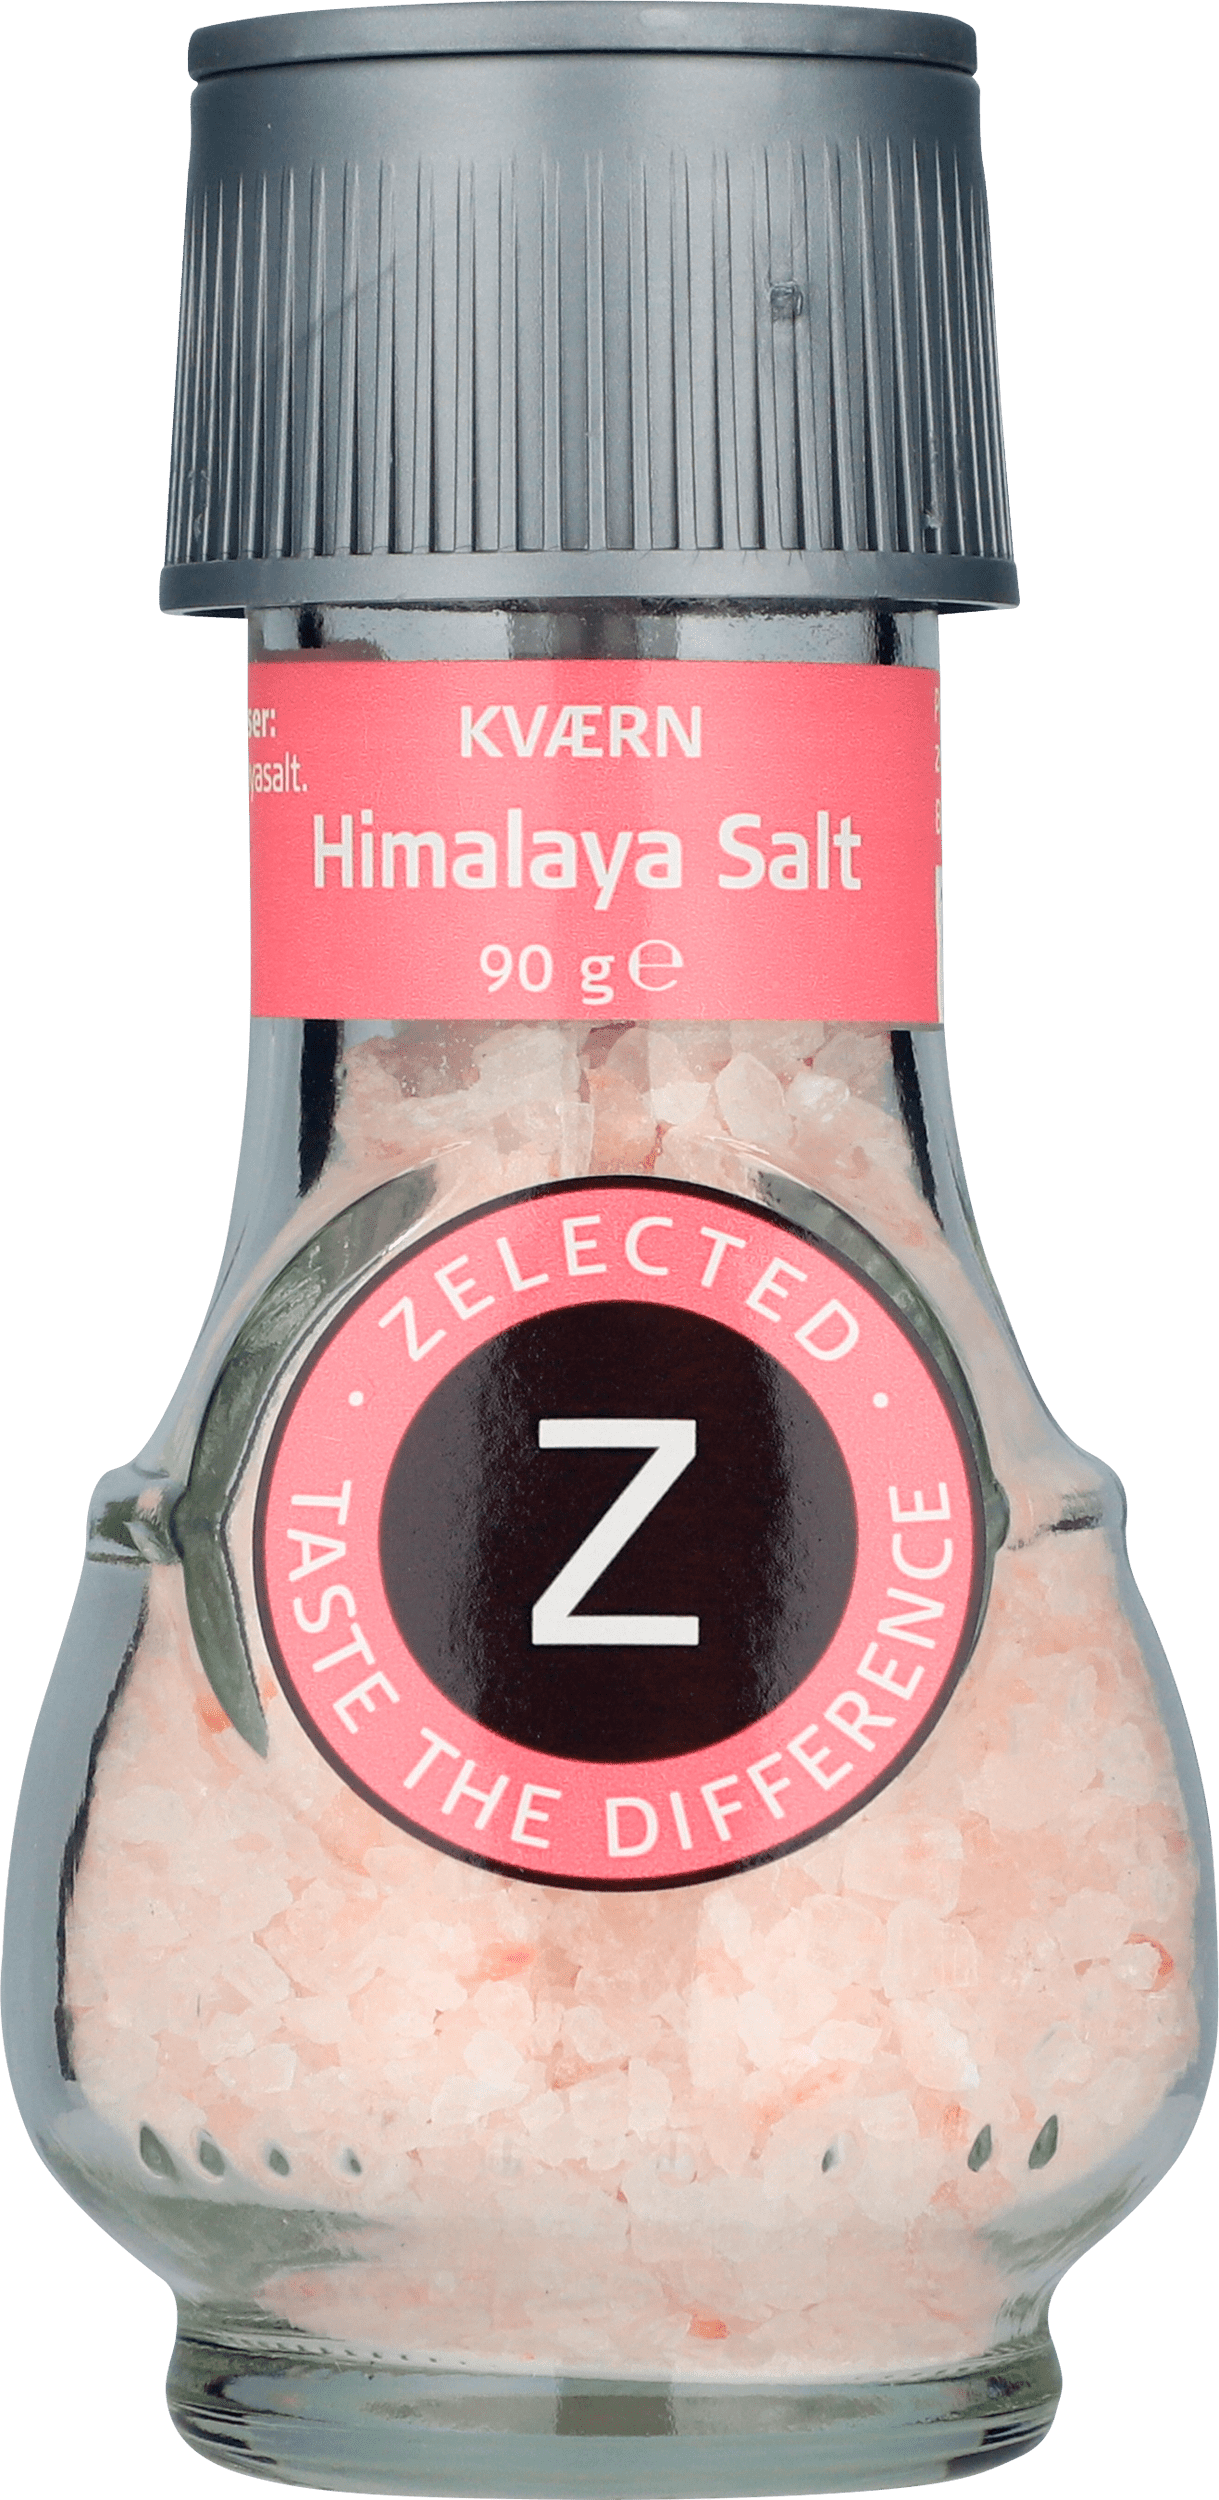 Konsultere Stirre Kig forbi Himalaya Salt Kværn | Zelected Foods